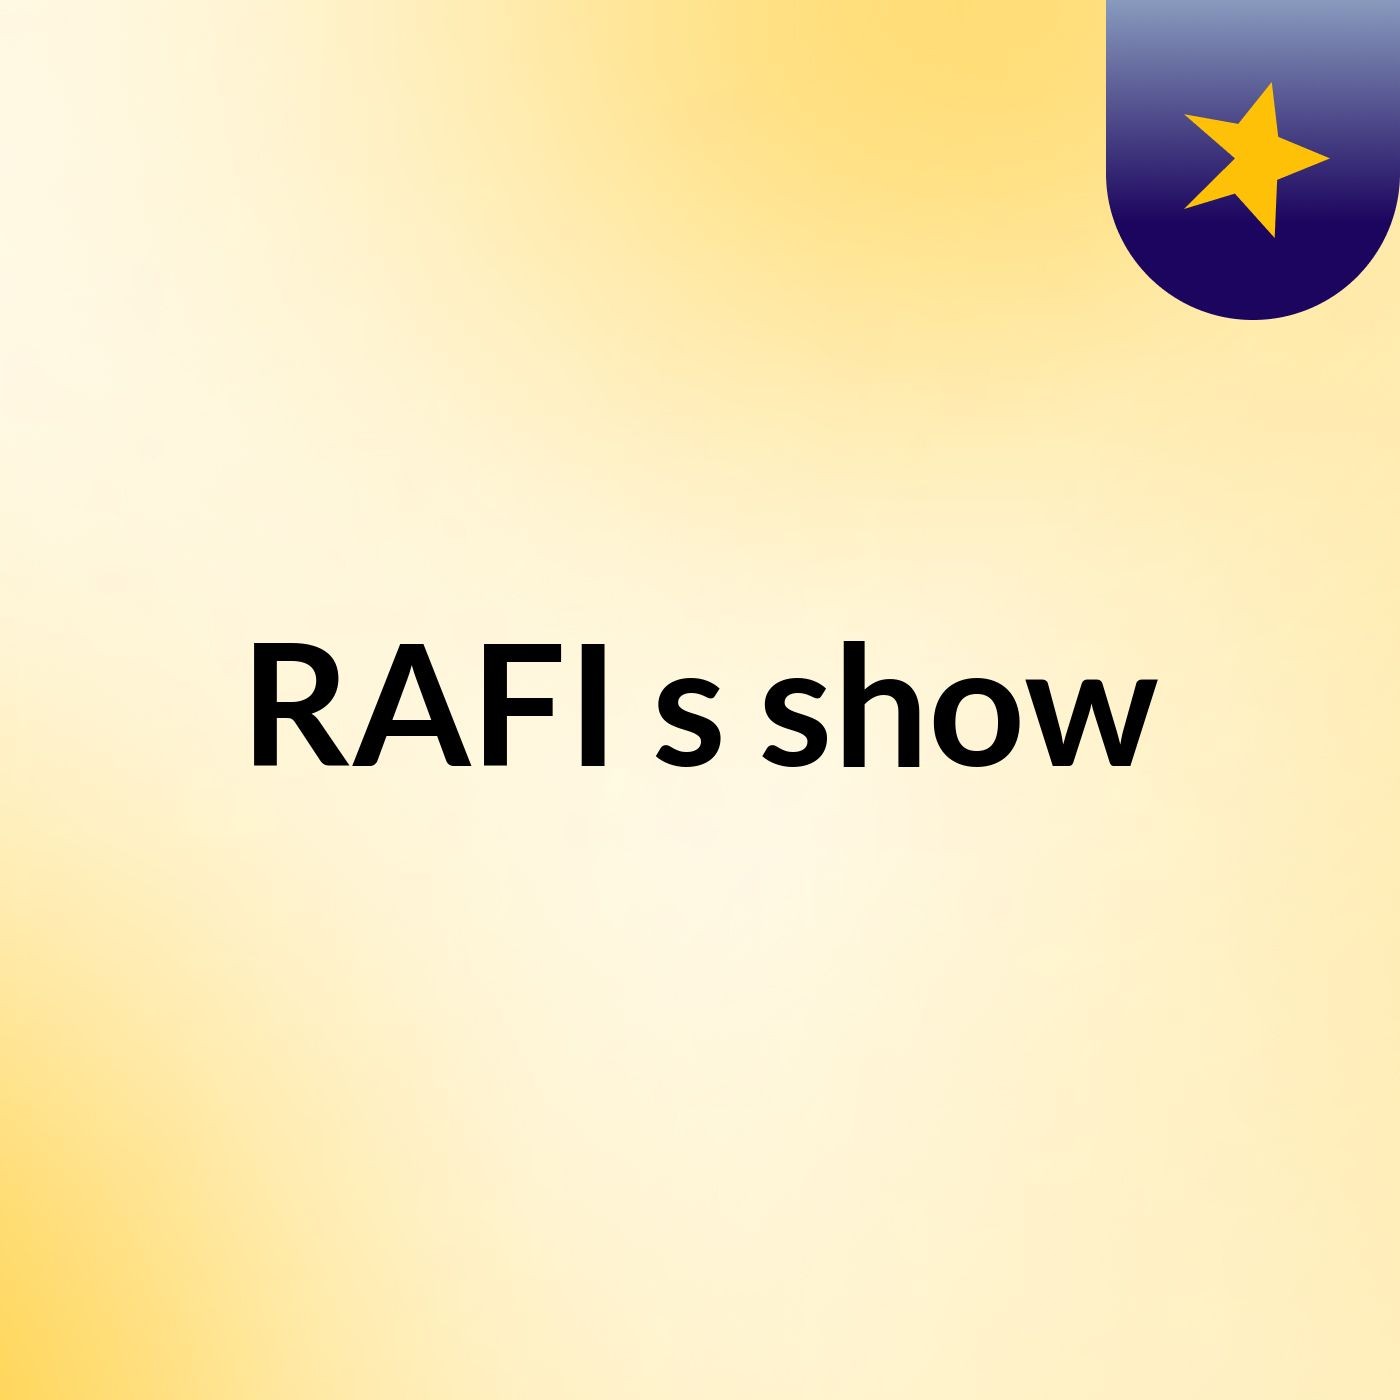 RAFI's show